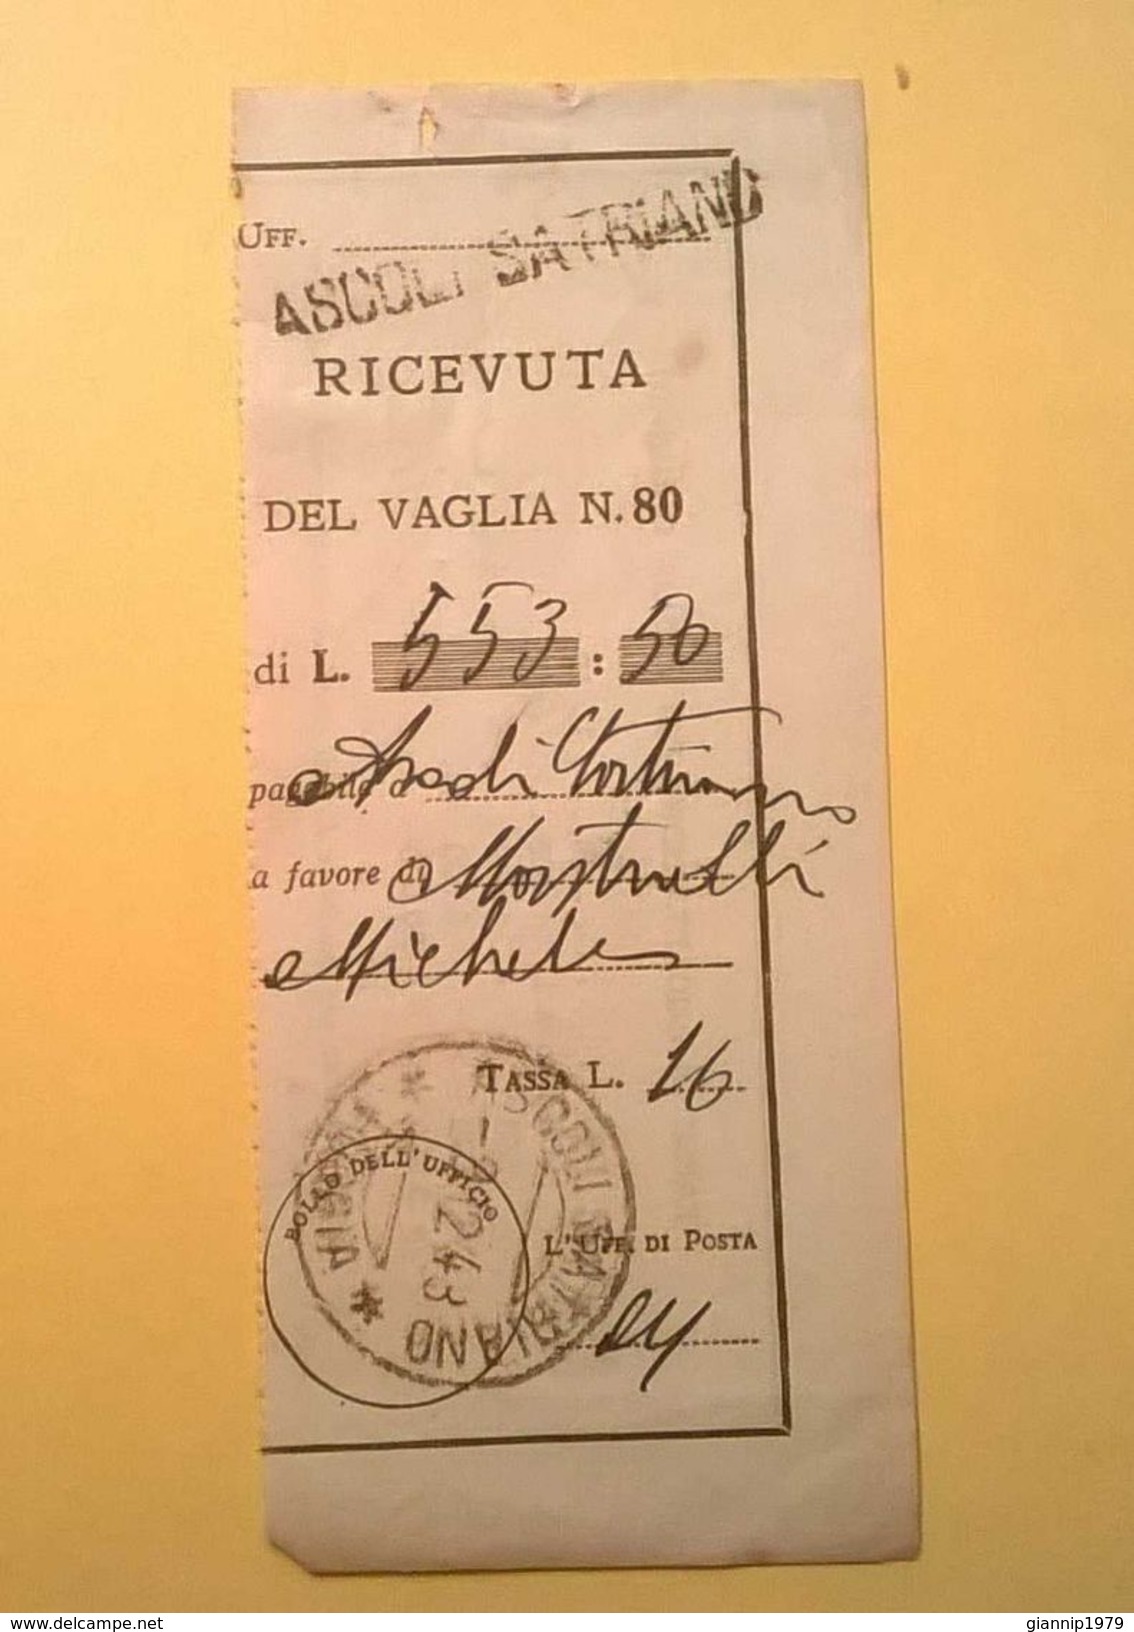 VAGLIA POSTALE RICEVUTA ASCOLI SATRIANO FOGGIA 1948 - Tax On Money Orders